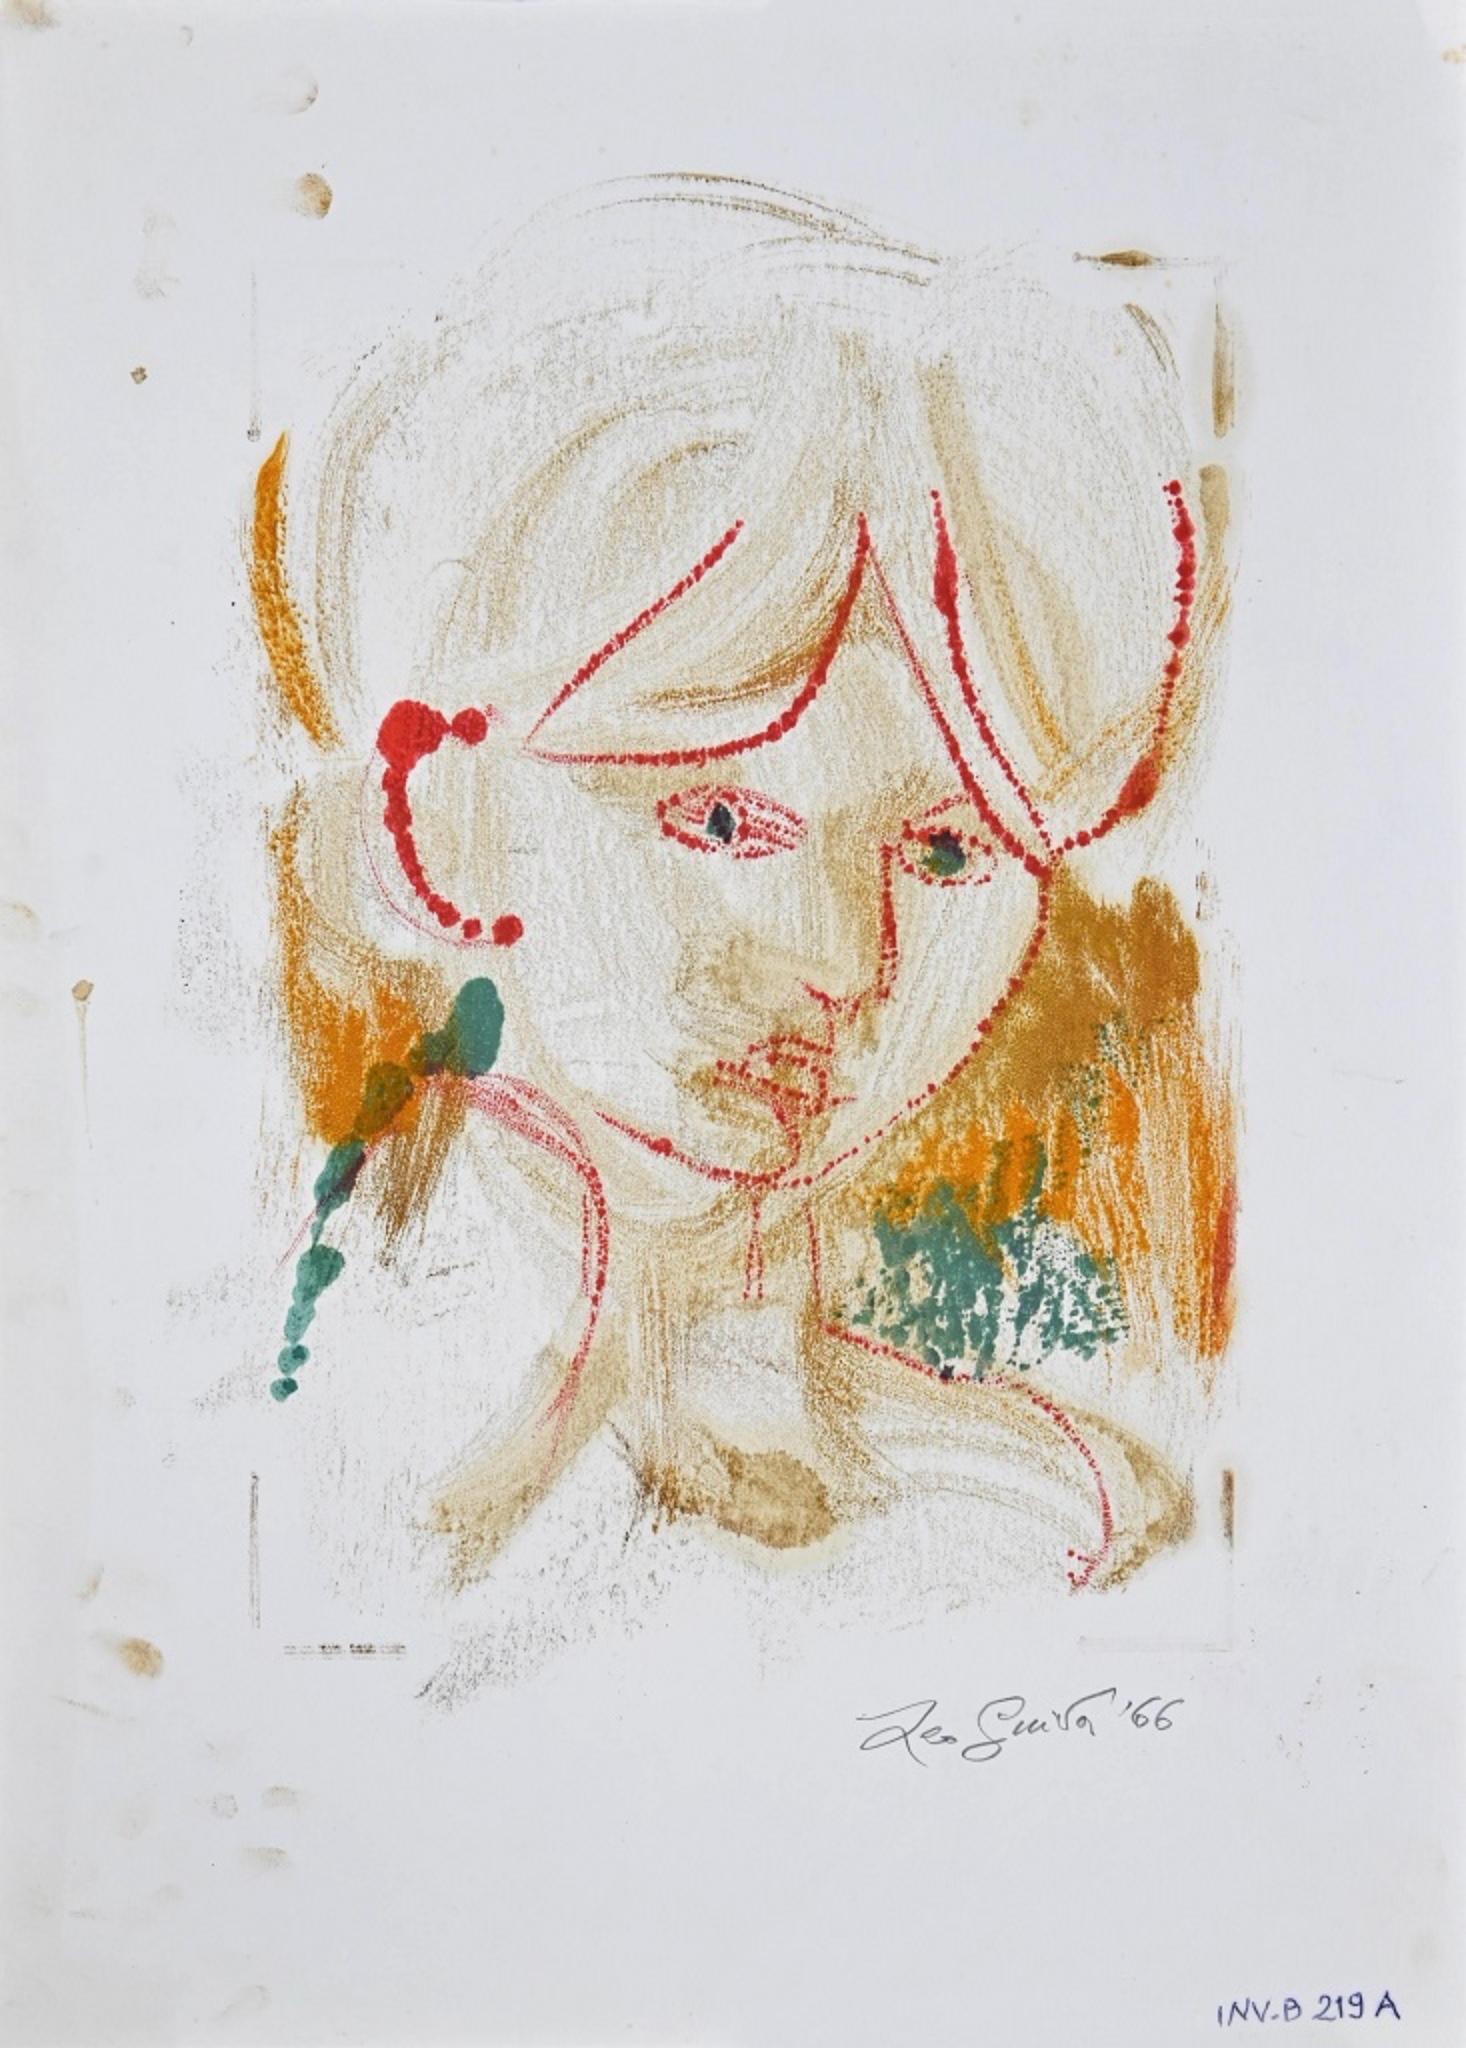 Female Portrait ist ein originales zeitgenössisches Kunstwerk des italienischen Künstlers Leo Guida aus dem Jahr 1966.

Handsigniert und datiert mit Bleistift in der unteren rechten Ecke: Leo Guida '66. 

Original-Lithographie auf Papier.  